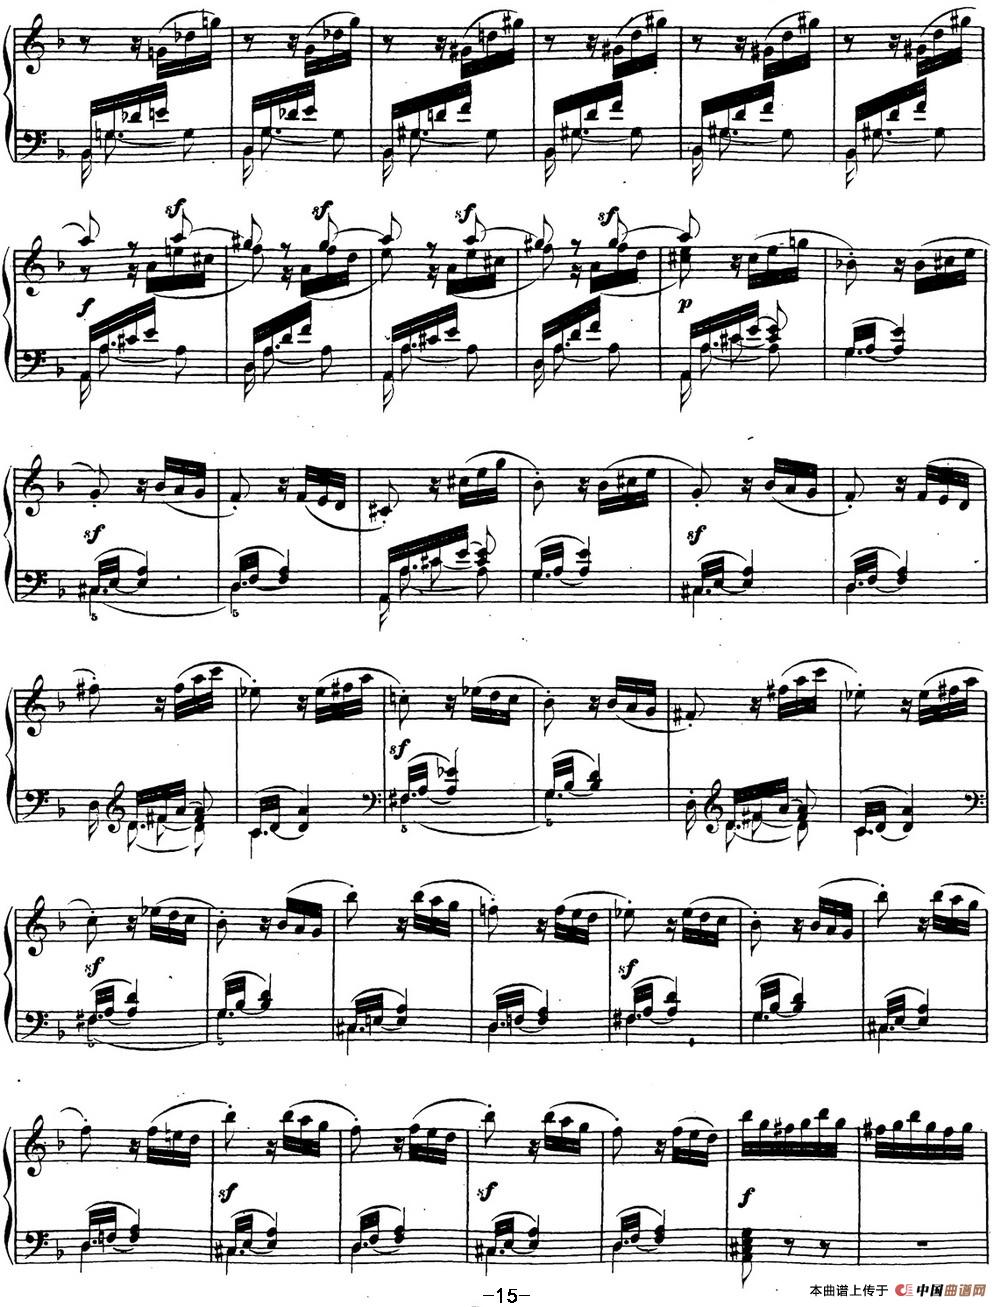 贝多芬钢琴奏鸣曲17 暴风雨 d小调 Op.31 No.2 D min